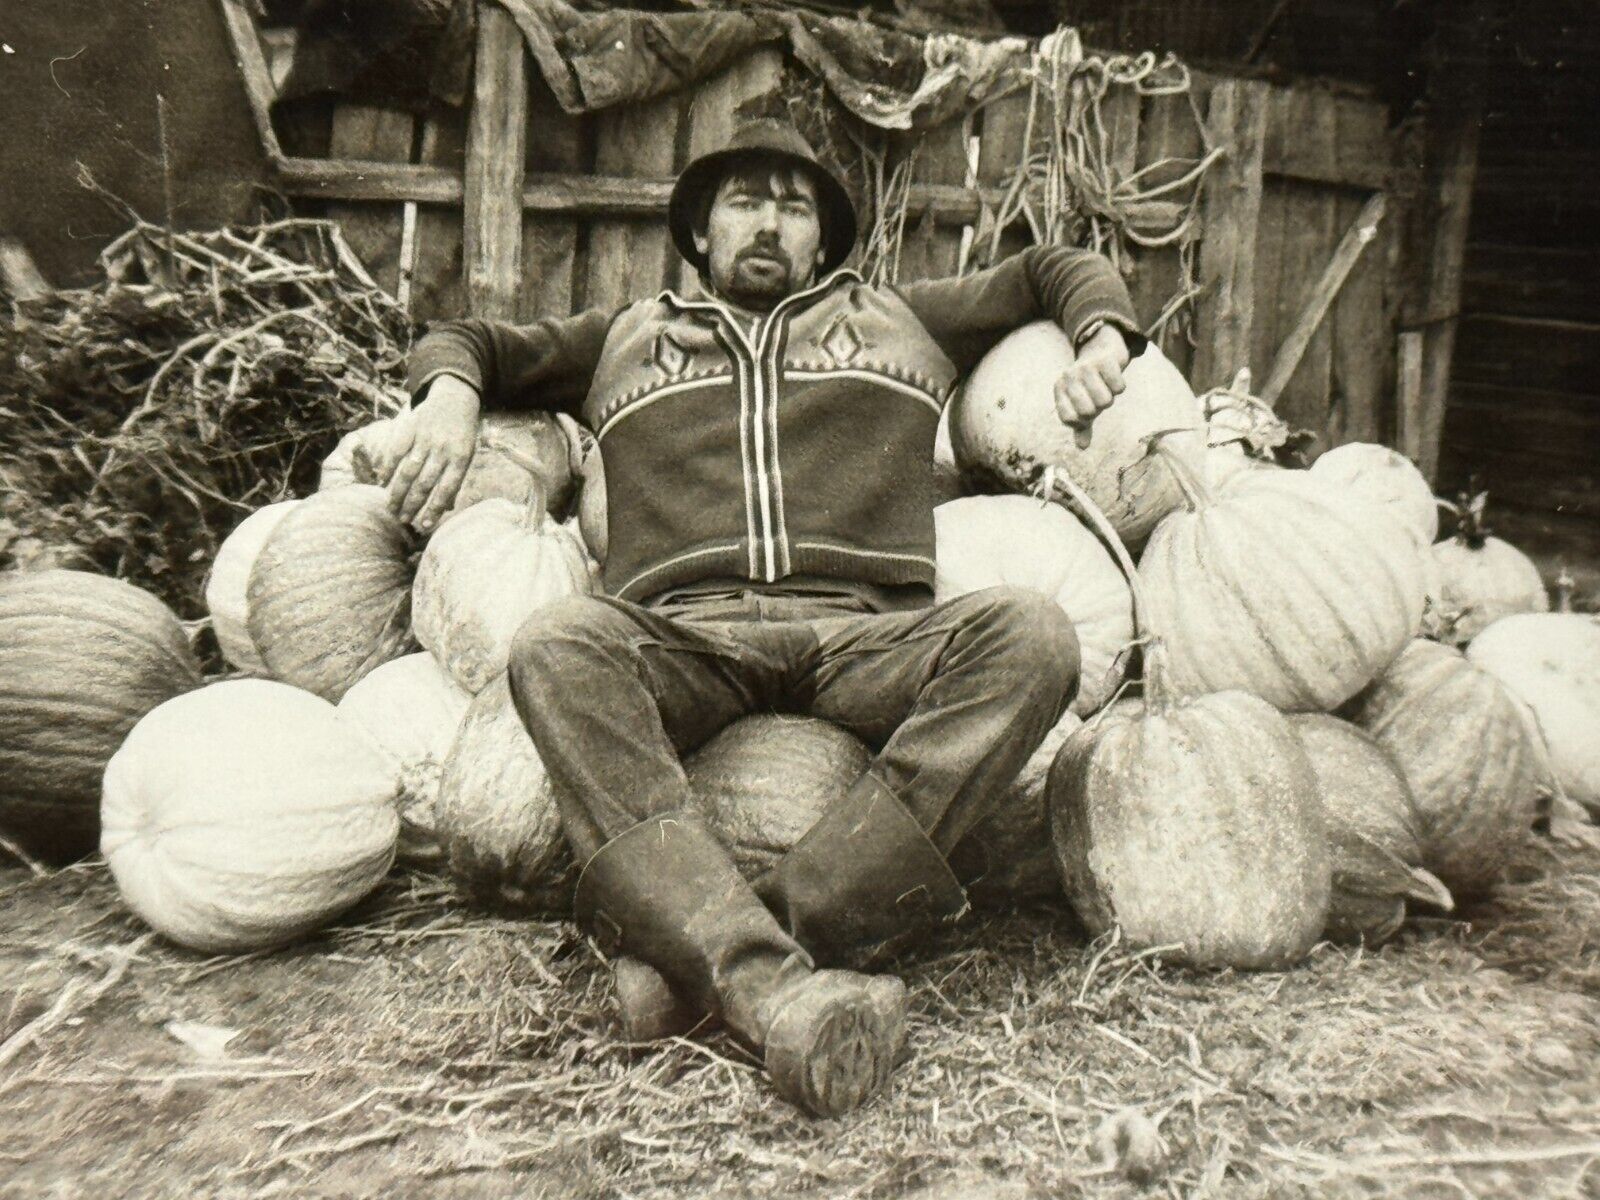 1980s Affectionate Handsome Rural Man Harvest of Giant Pumpkins Vintage Photo